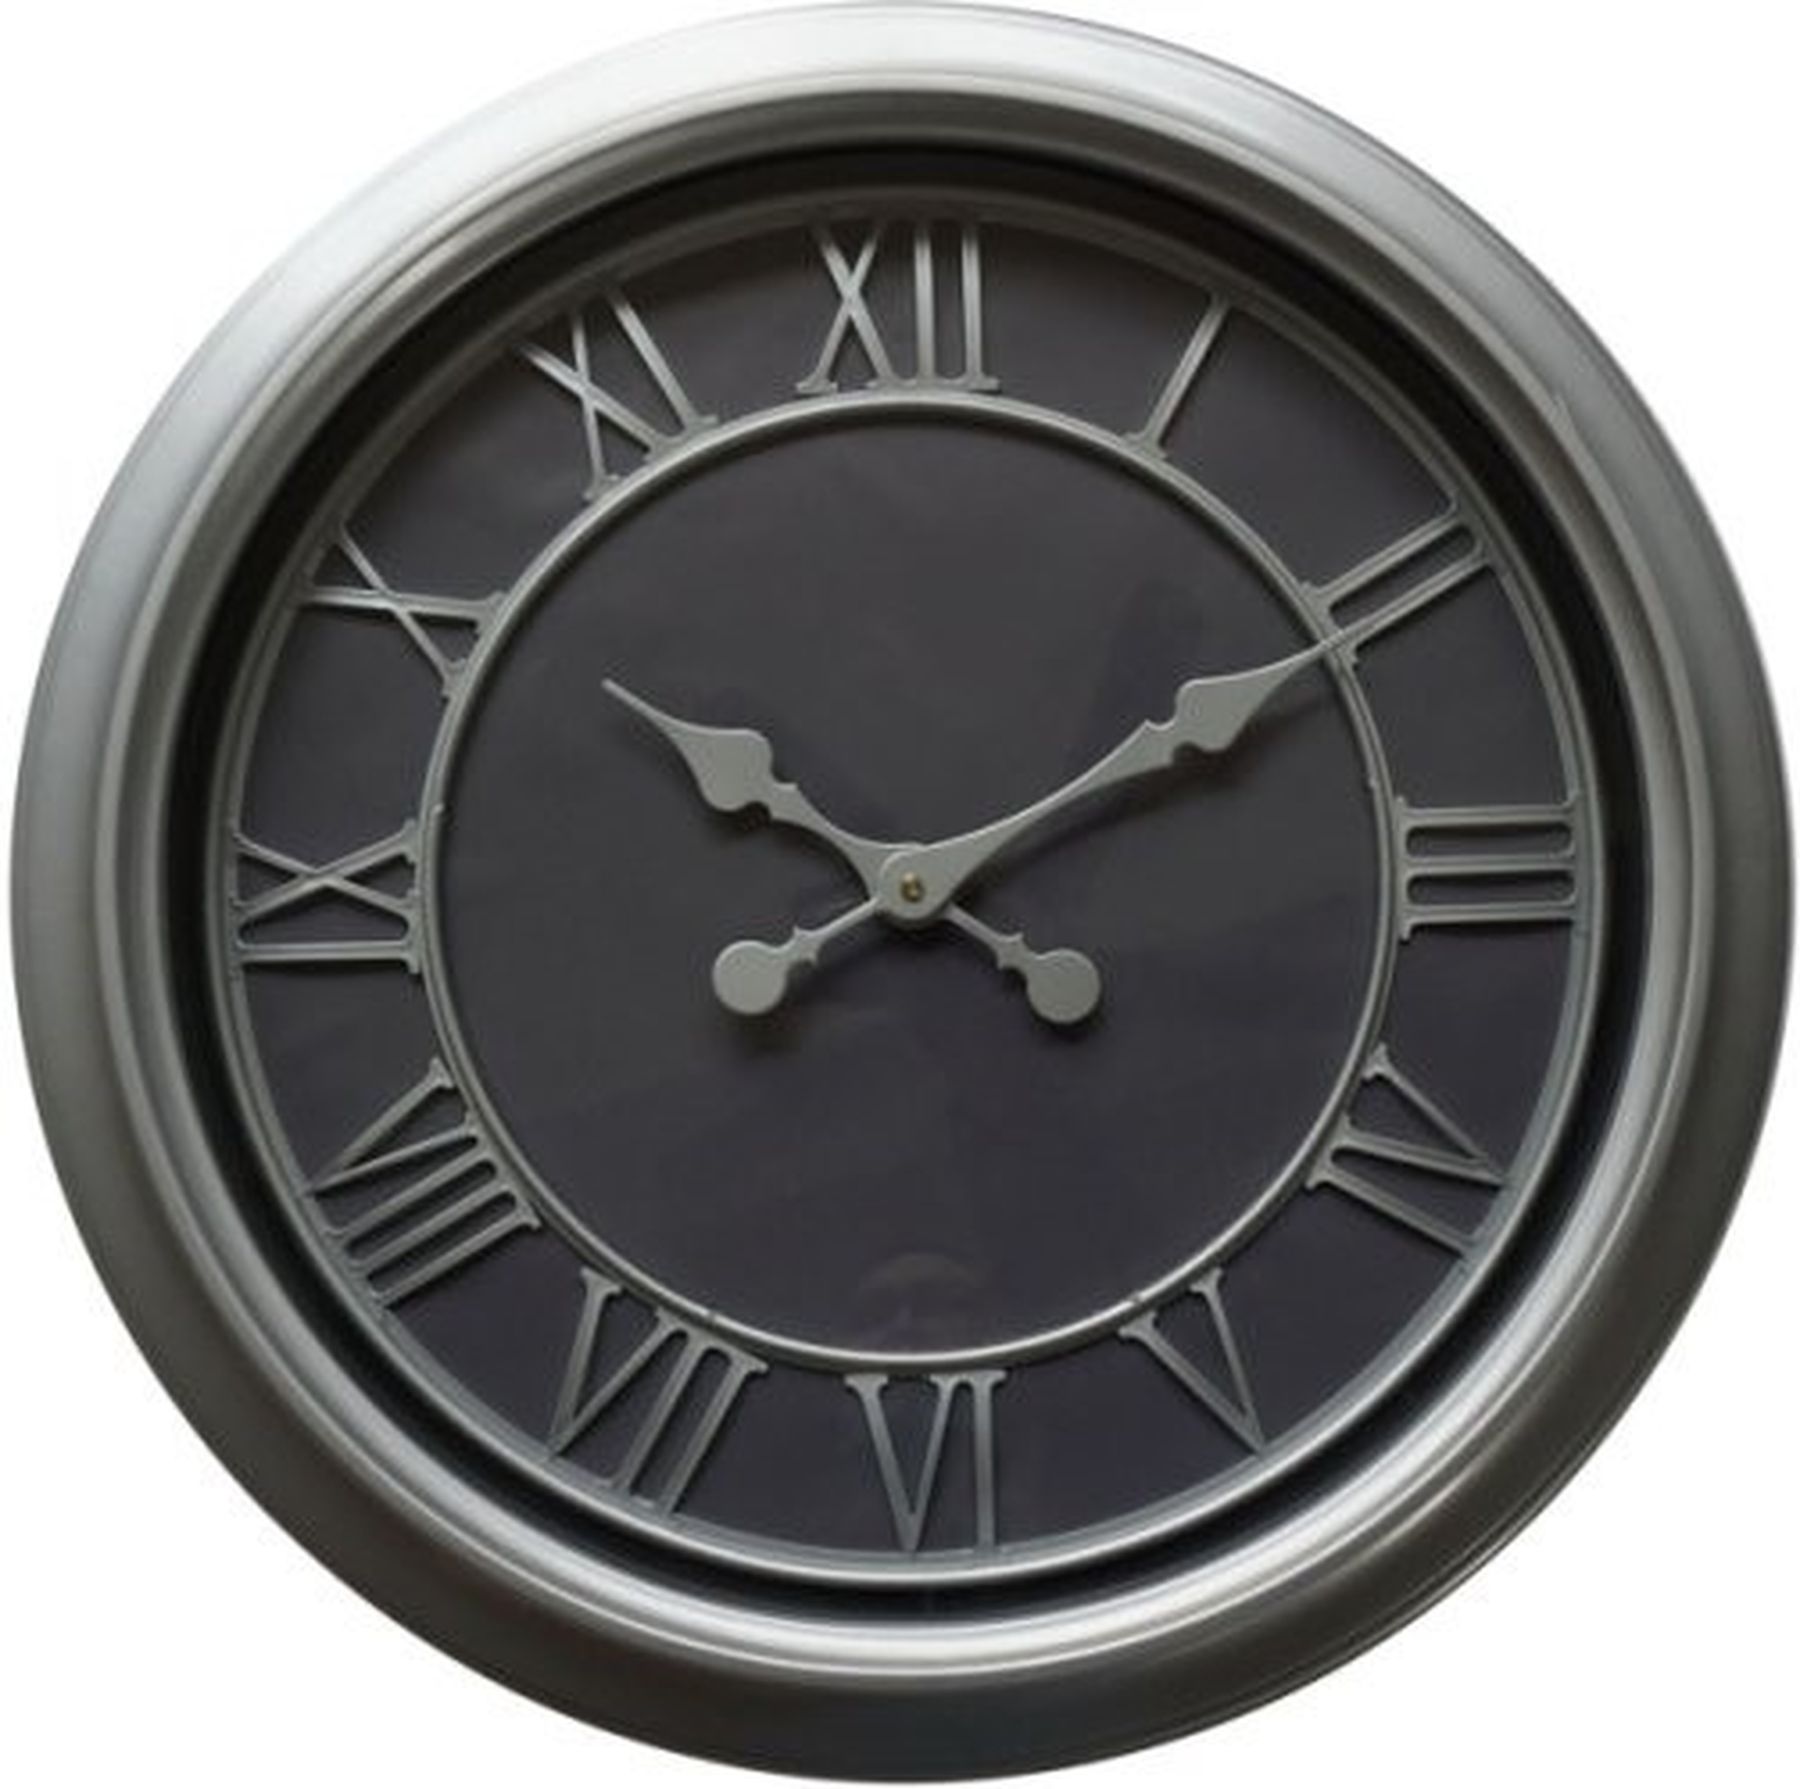 Bloomsbury Wall Clock